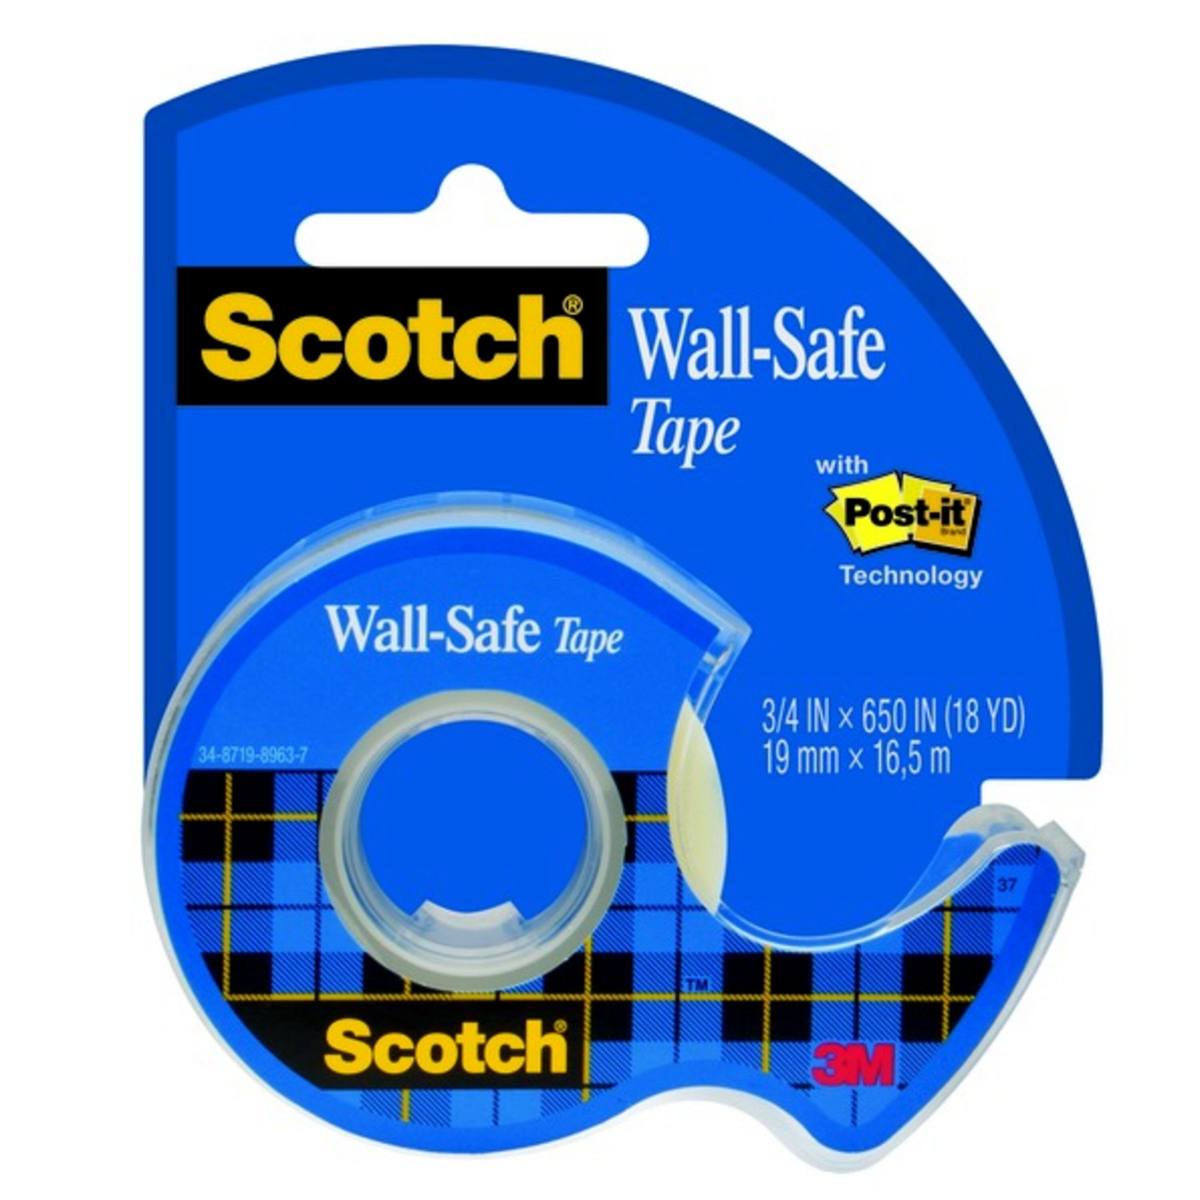 3M Scotch Wall-Safe ruban adhésif 19 mm x 16,5 m 1 rouleau, 1 maxi-dérouleur